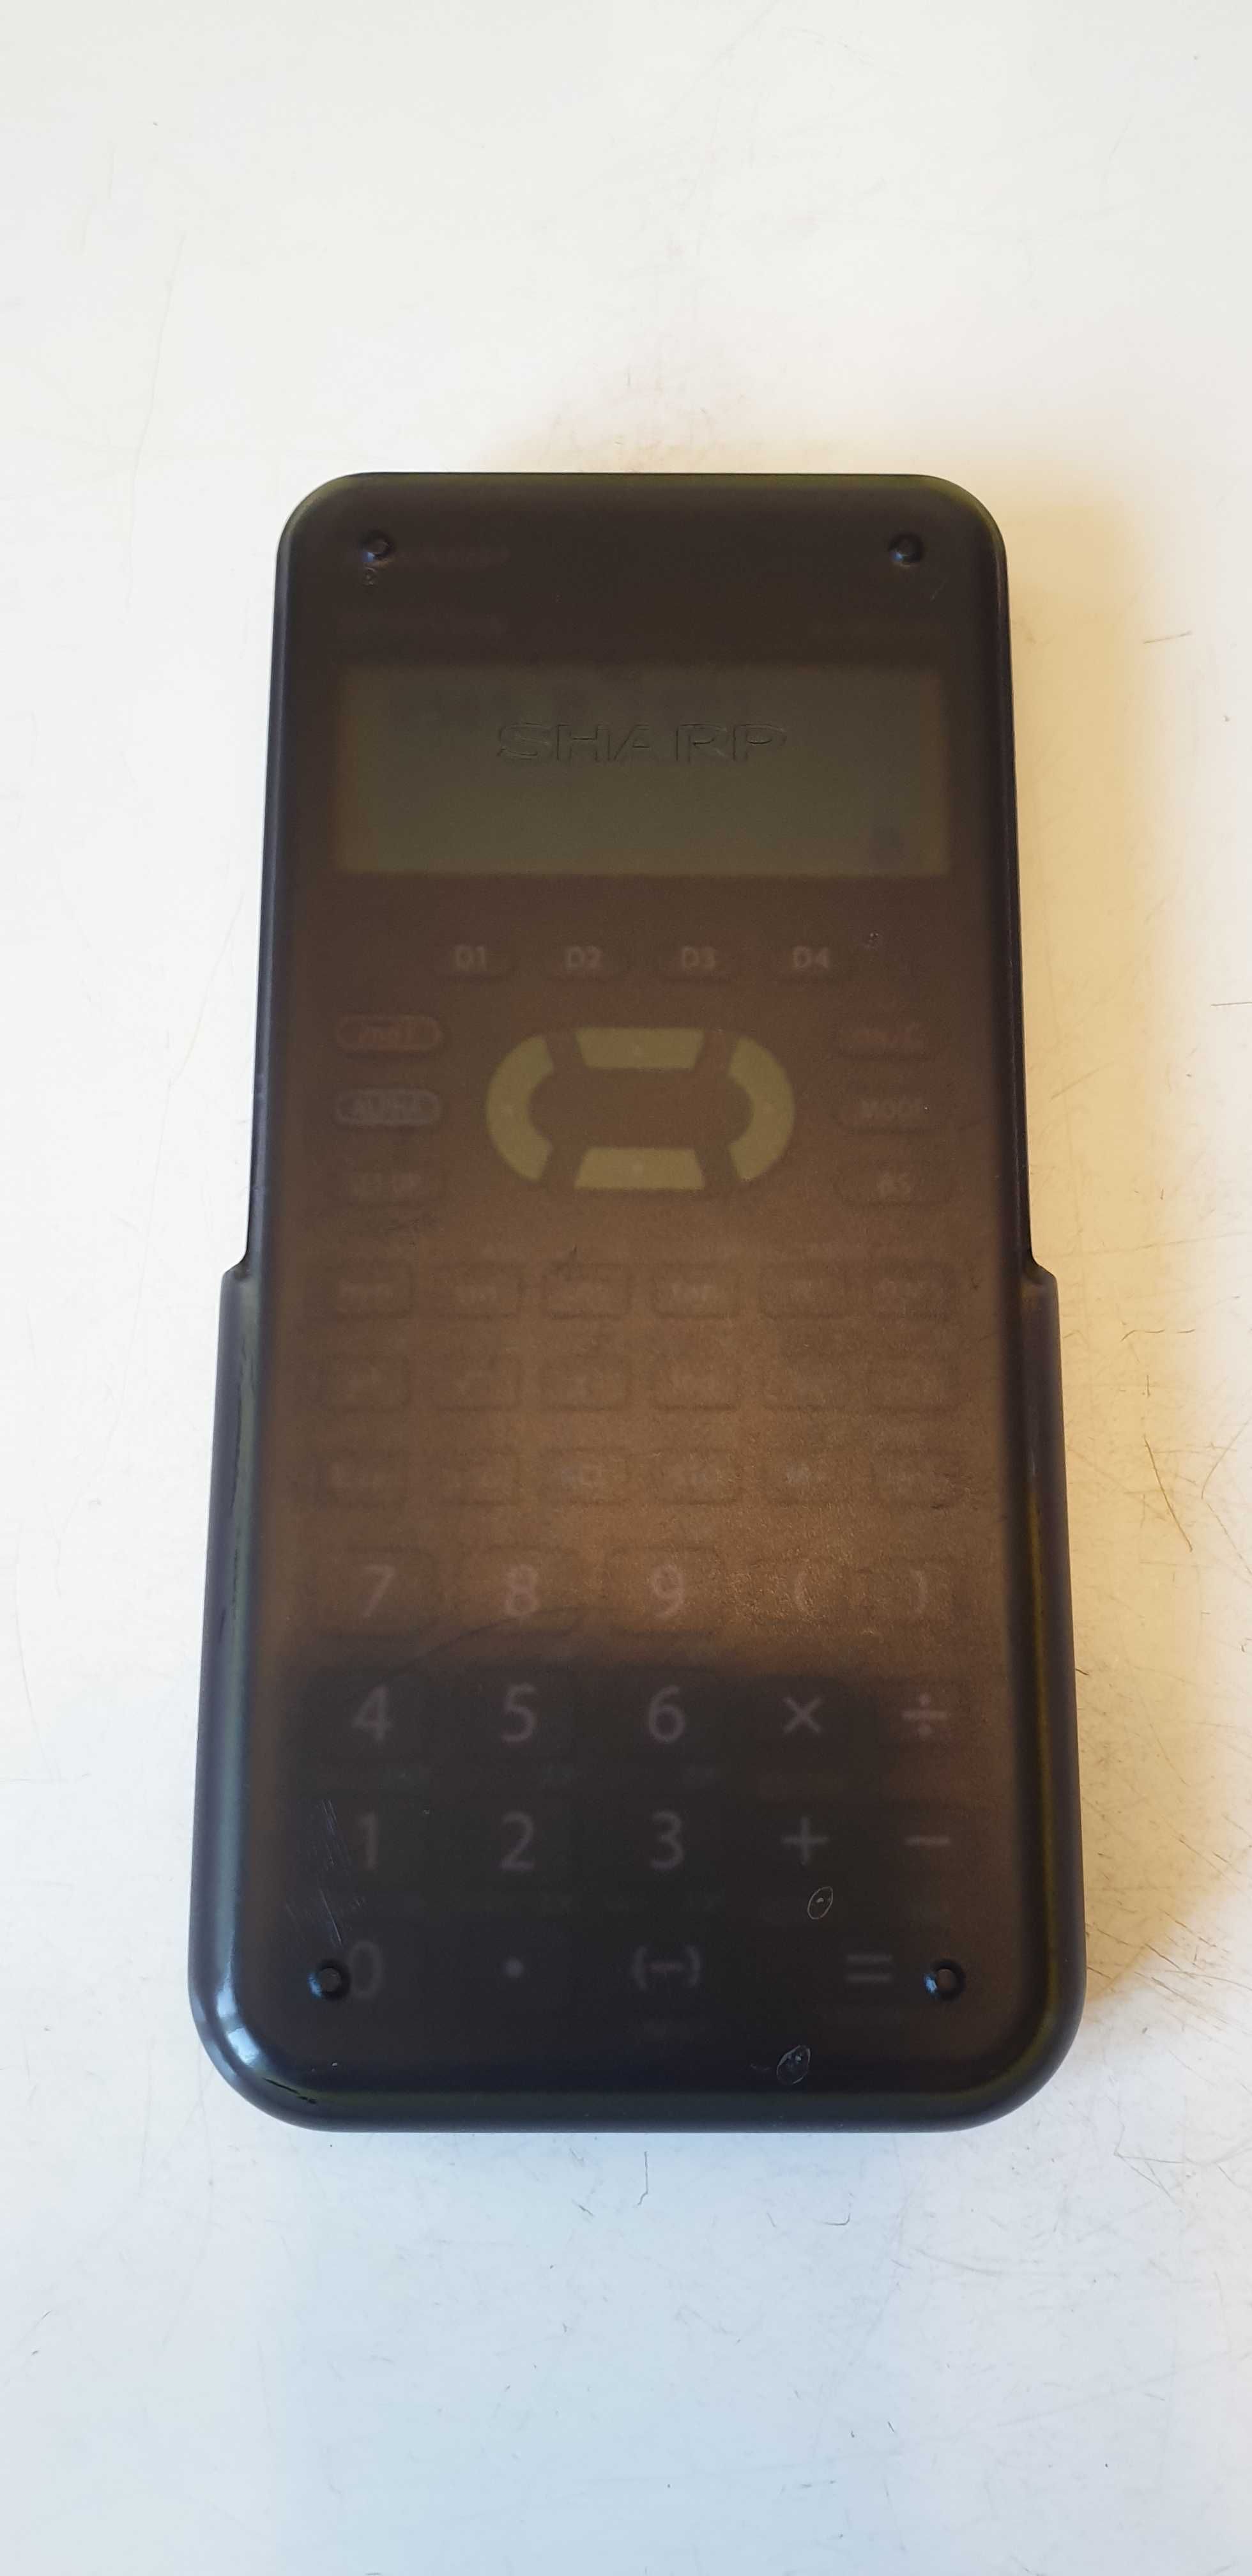 Sharp EL-W531XH, kalkulator biurowy, naukowy